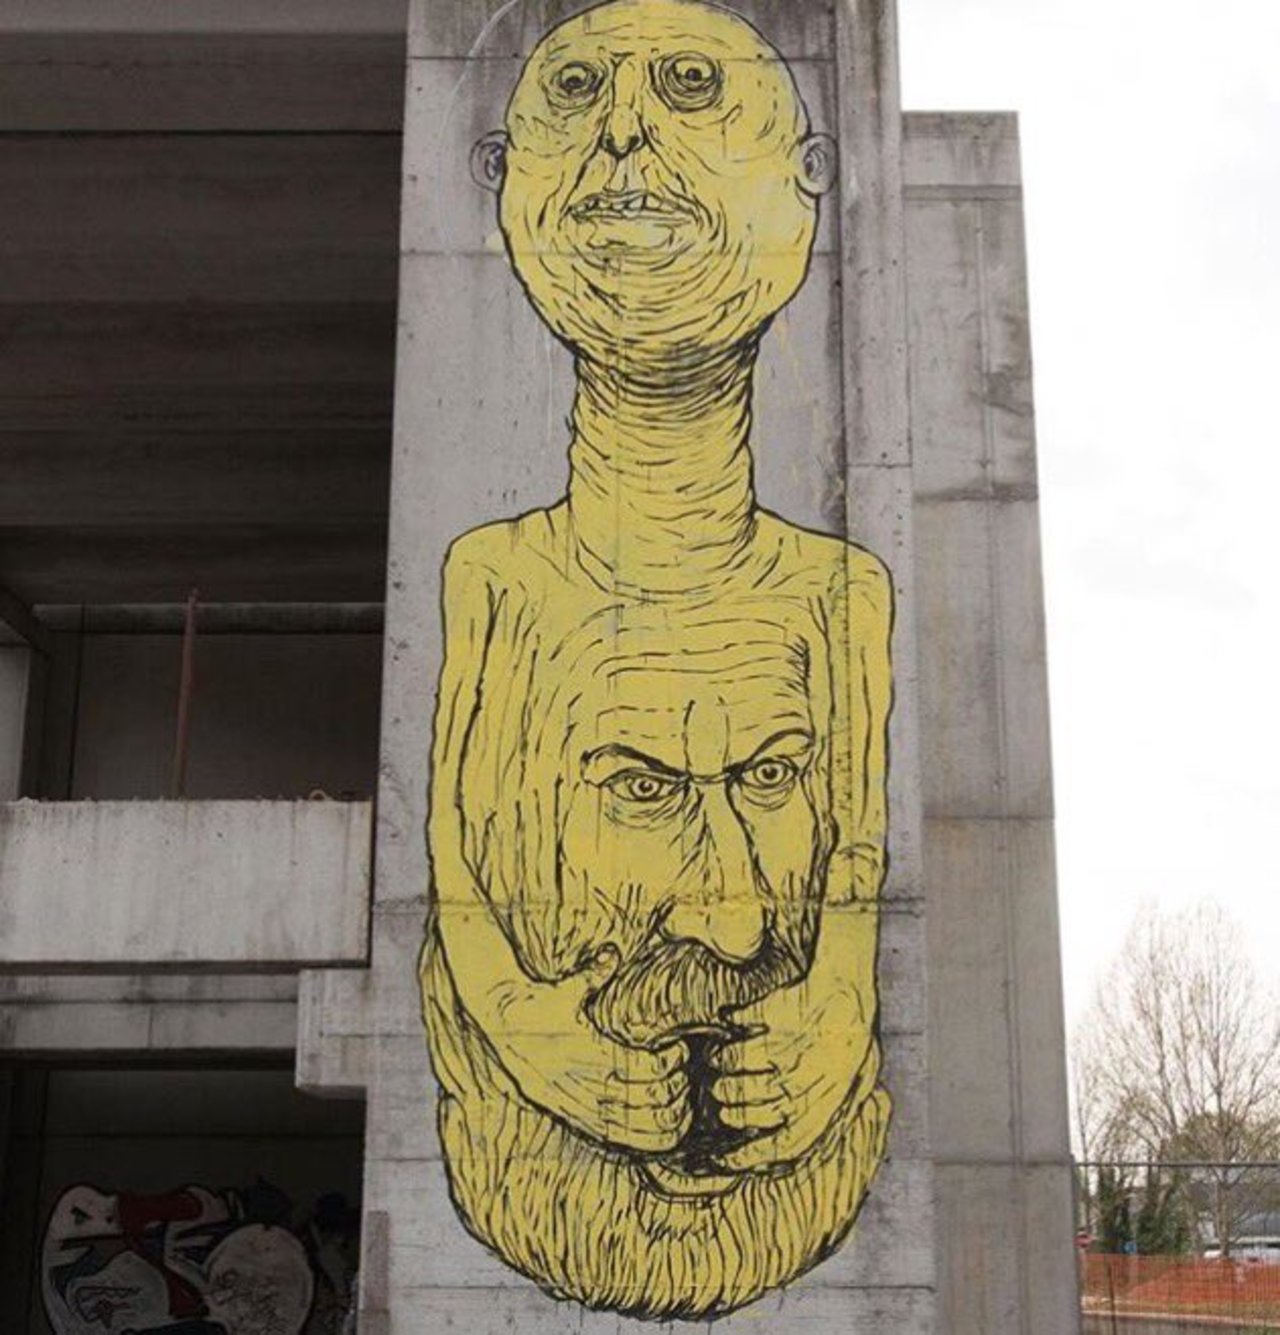 Dope street art by @whoisnemos #streetart #graffiti #mural #art https://t.co/LCstsNqElJ